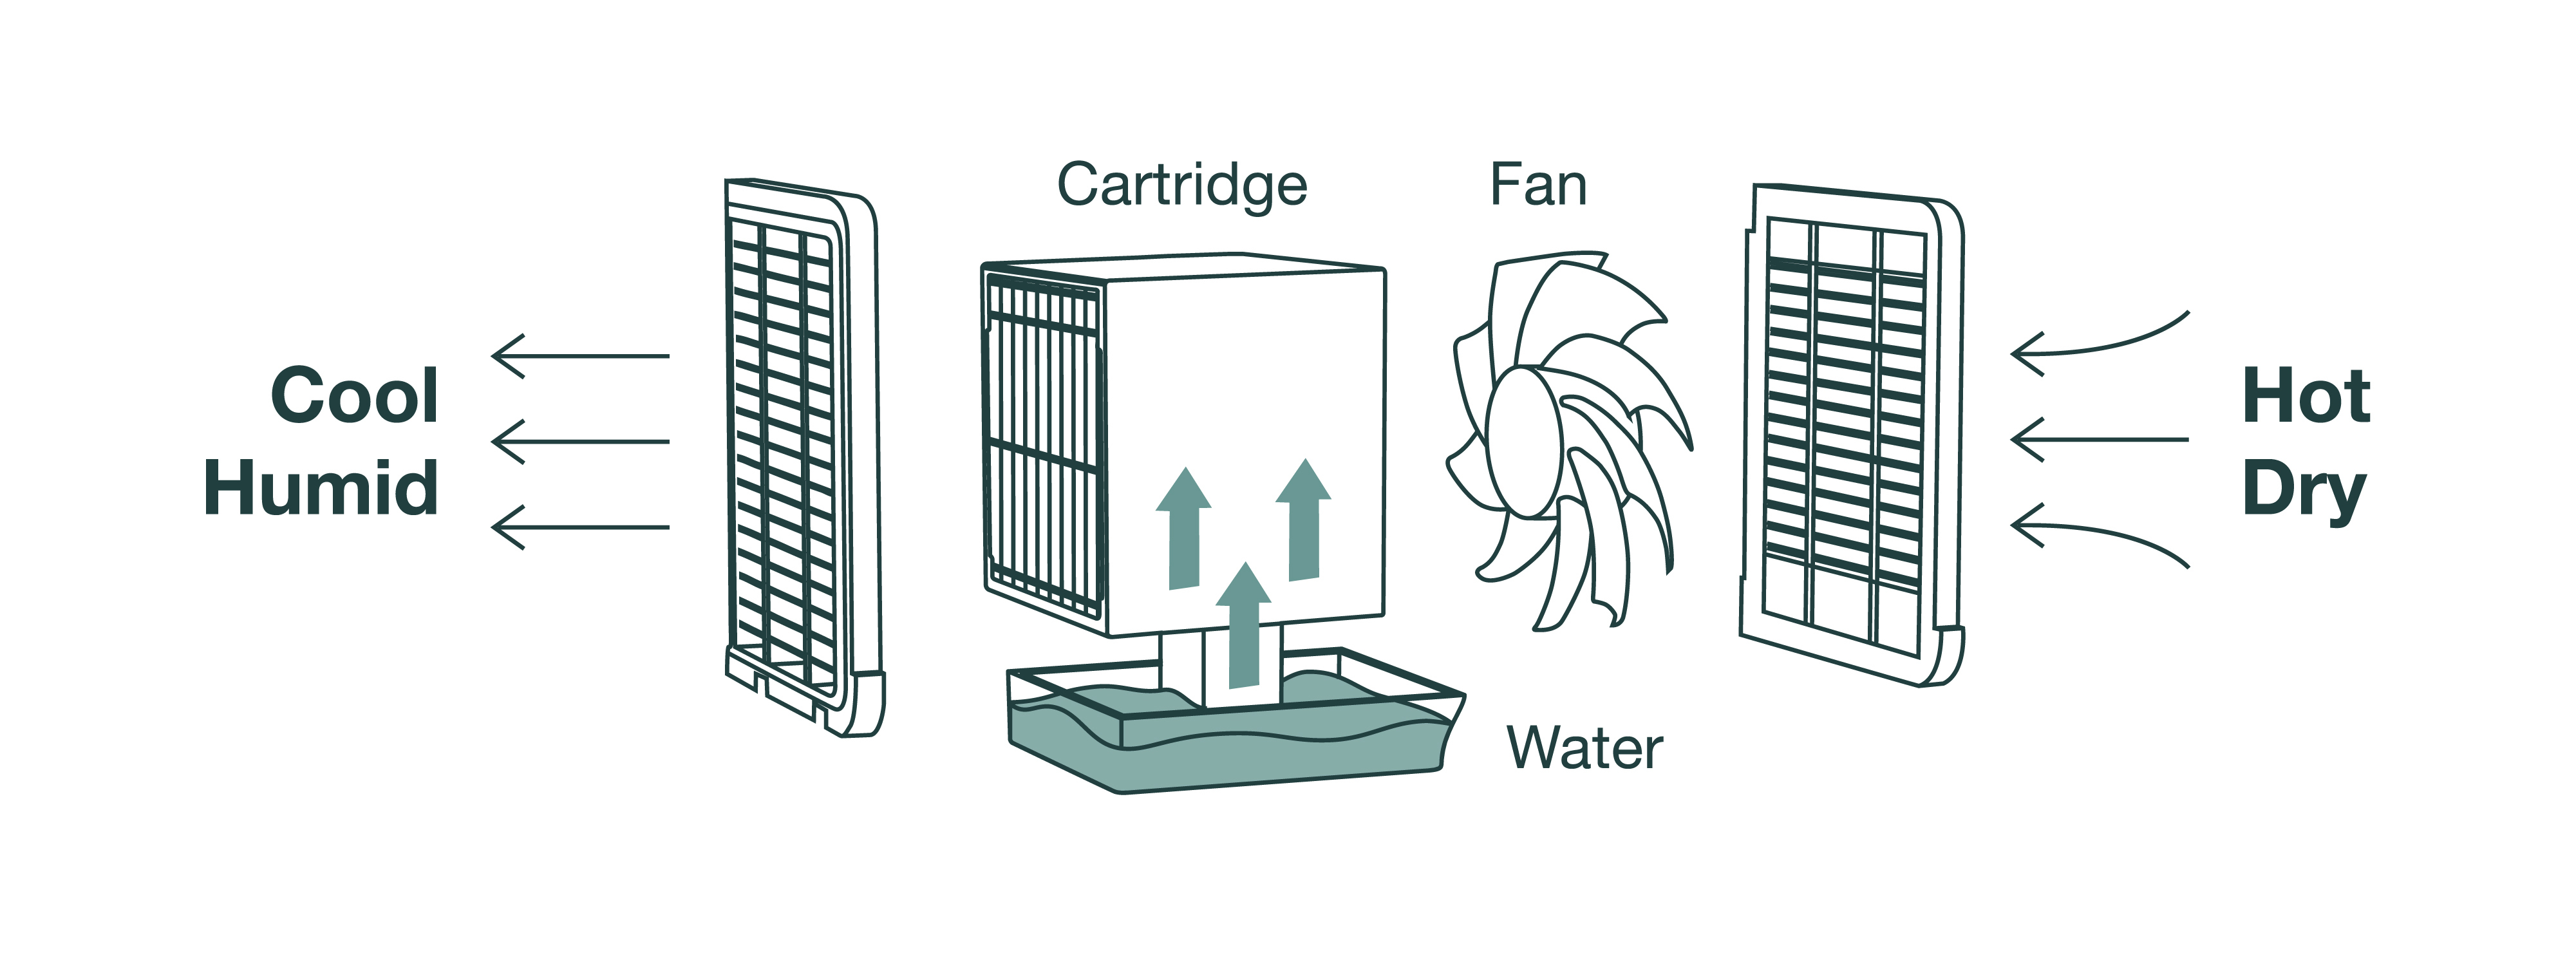 Evaporative cooling diagram